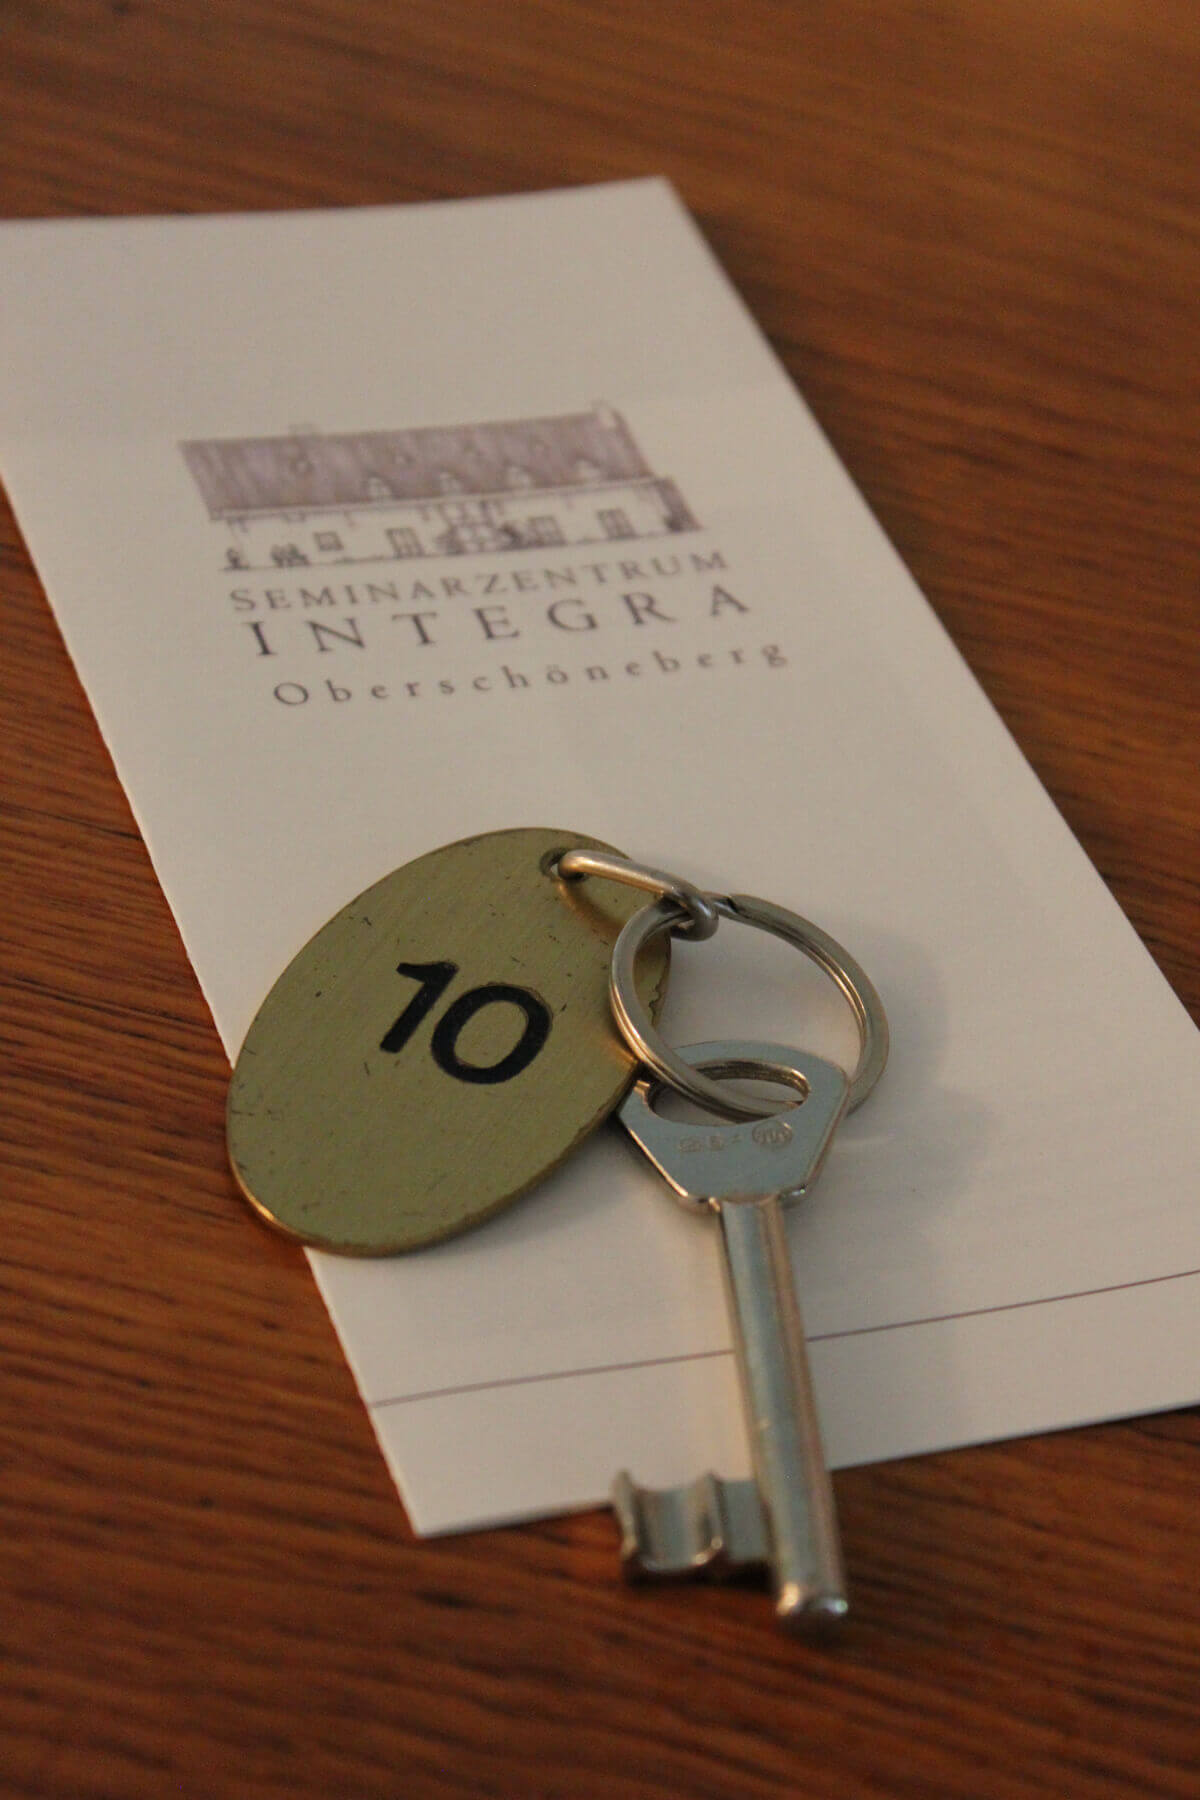 Ein Hotelschlüsse, auf dessen Anhänger die Zimmernummer 10 abgebildet ist. Der Schlüssel liegt auf einem Stück Papier.